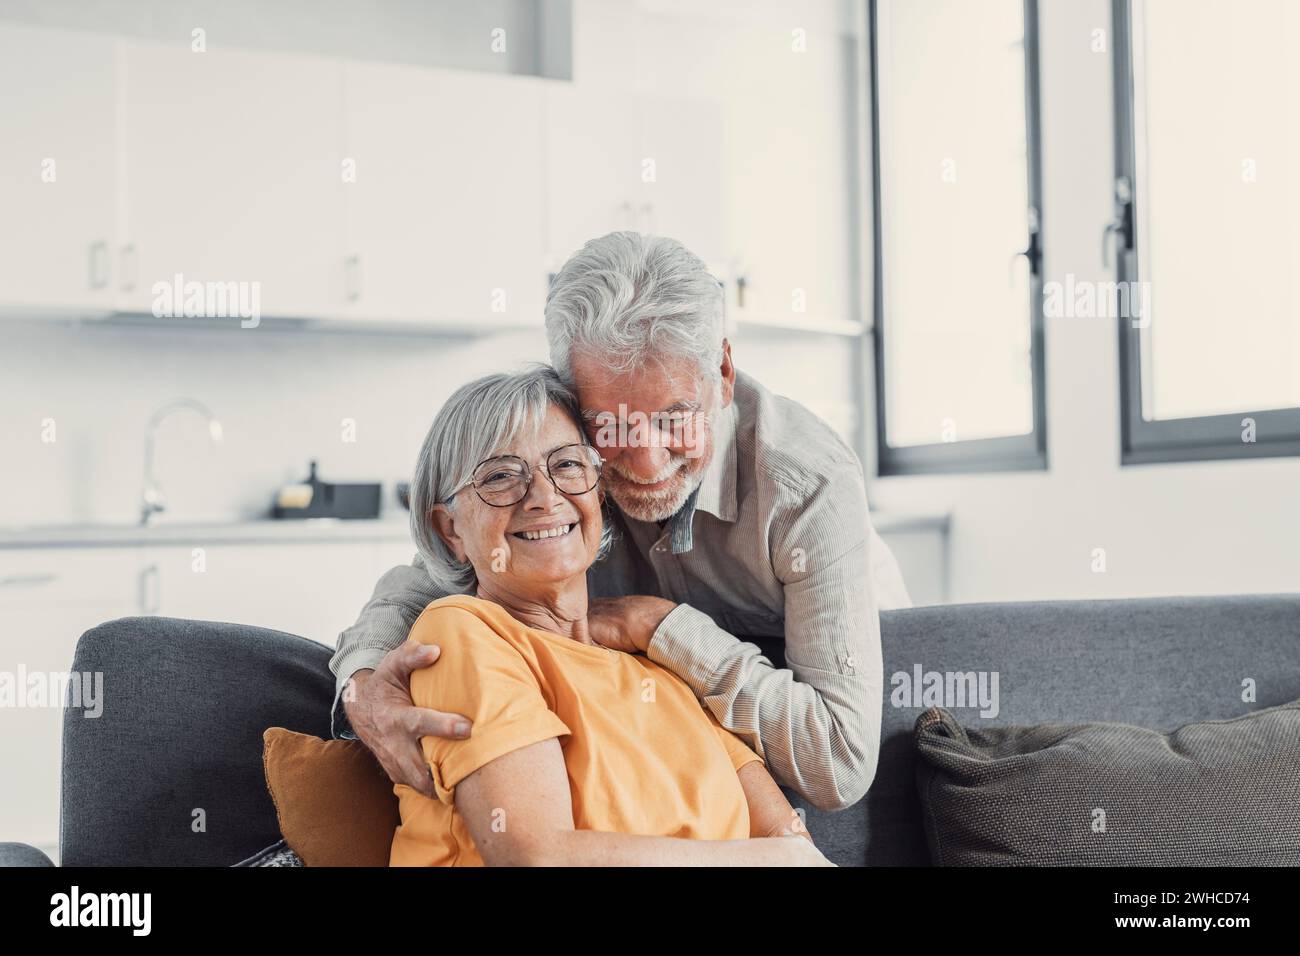 Kopffoto Porträt lächelnder älterer 60er Jahre Mann und Frau sitzen auf der Couch, umarmen Kuscheln, glückliches reifes altes Paar ruhen auf Sofa im Wohnzimmer umarmen Blick auf Kamera zeigen Liebe und Sorgfalt Stockfoto